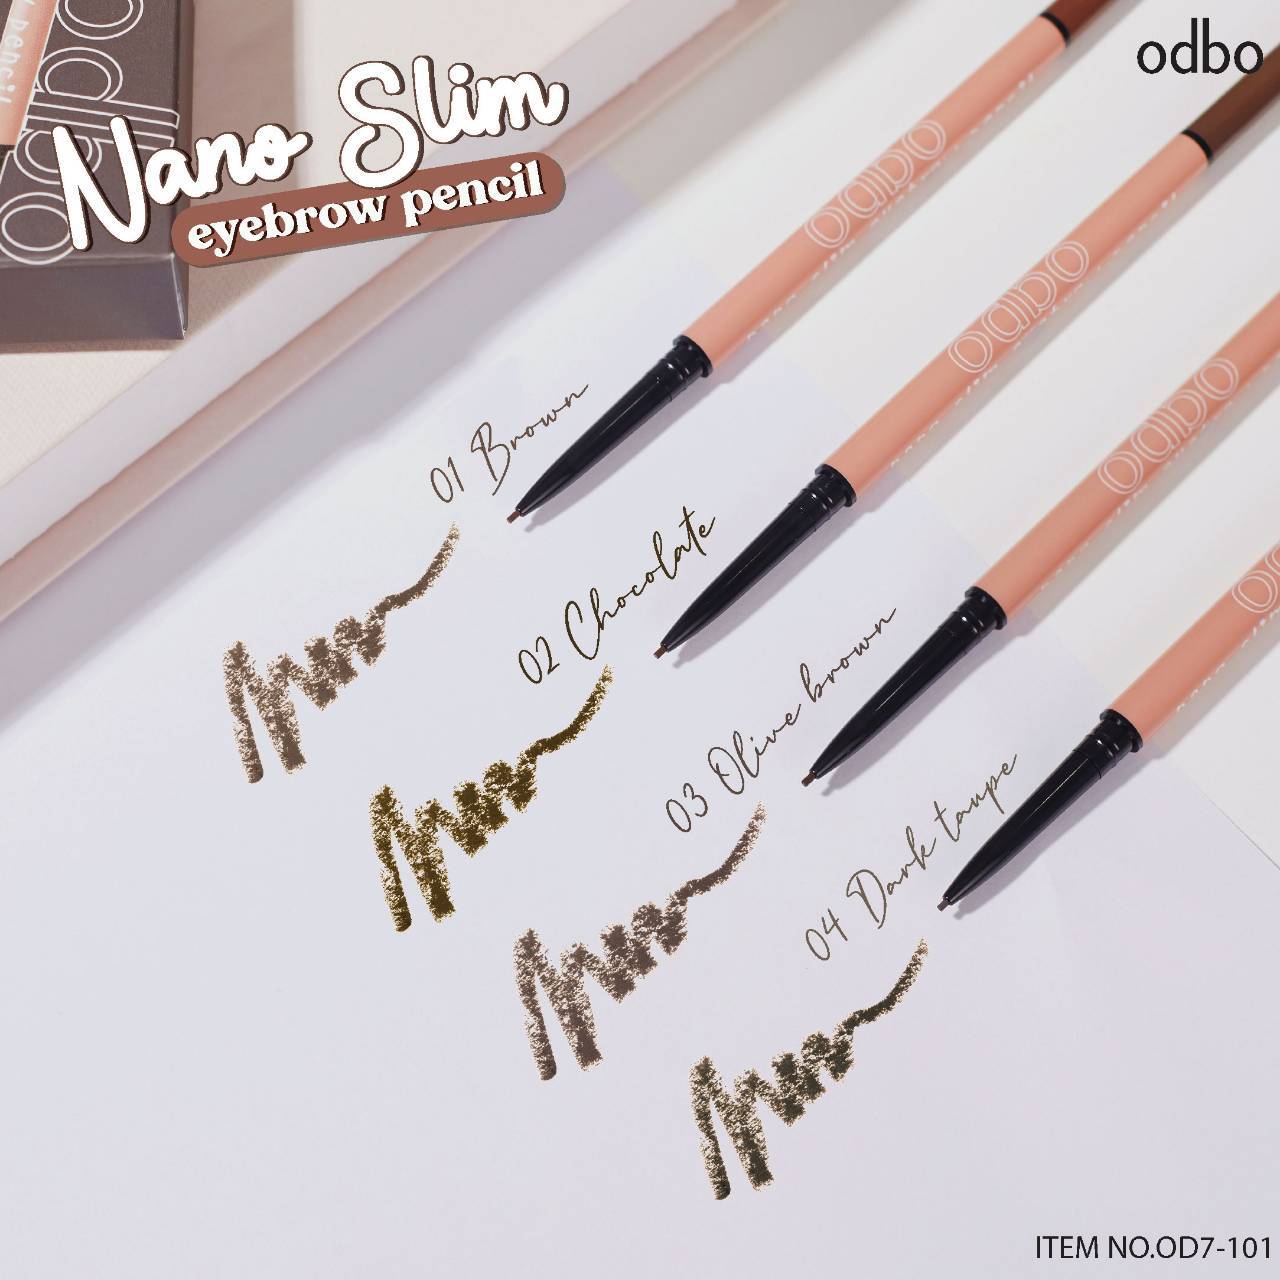 Odbo Nano Slim Eyebrow Pencil #OD7-101 : โอดีบีโอ นาโน สลิม อายบราว เพ็นซิล